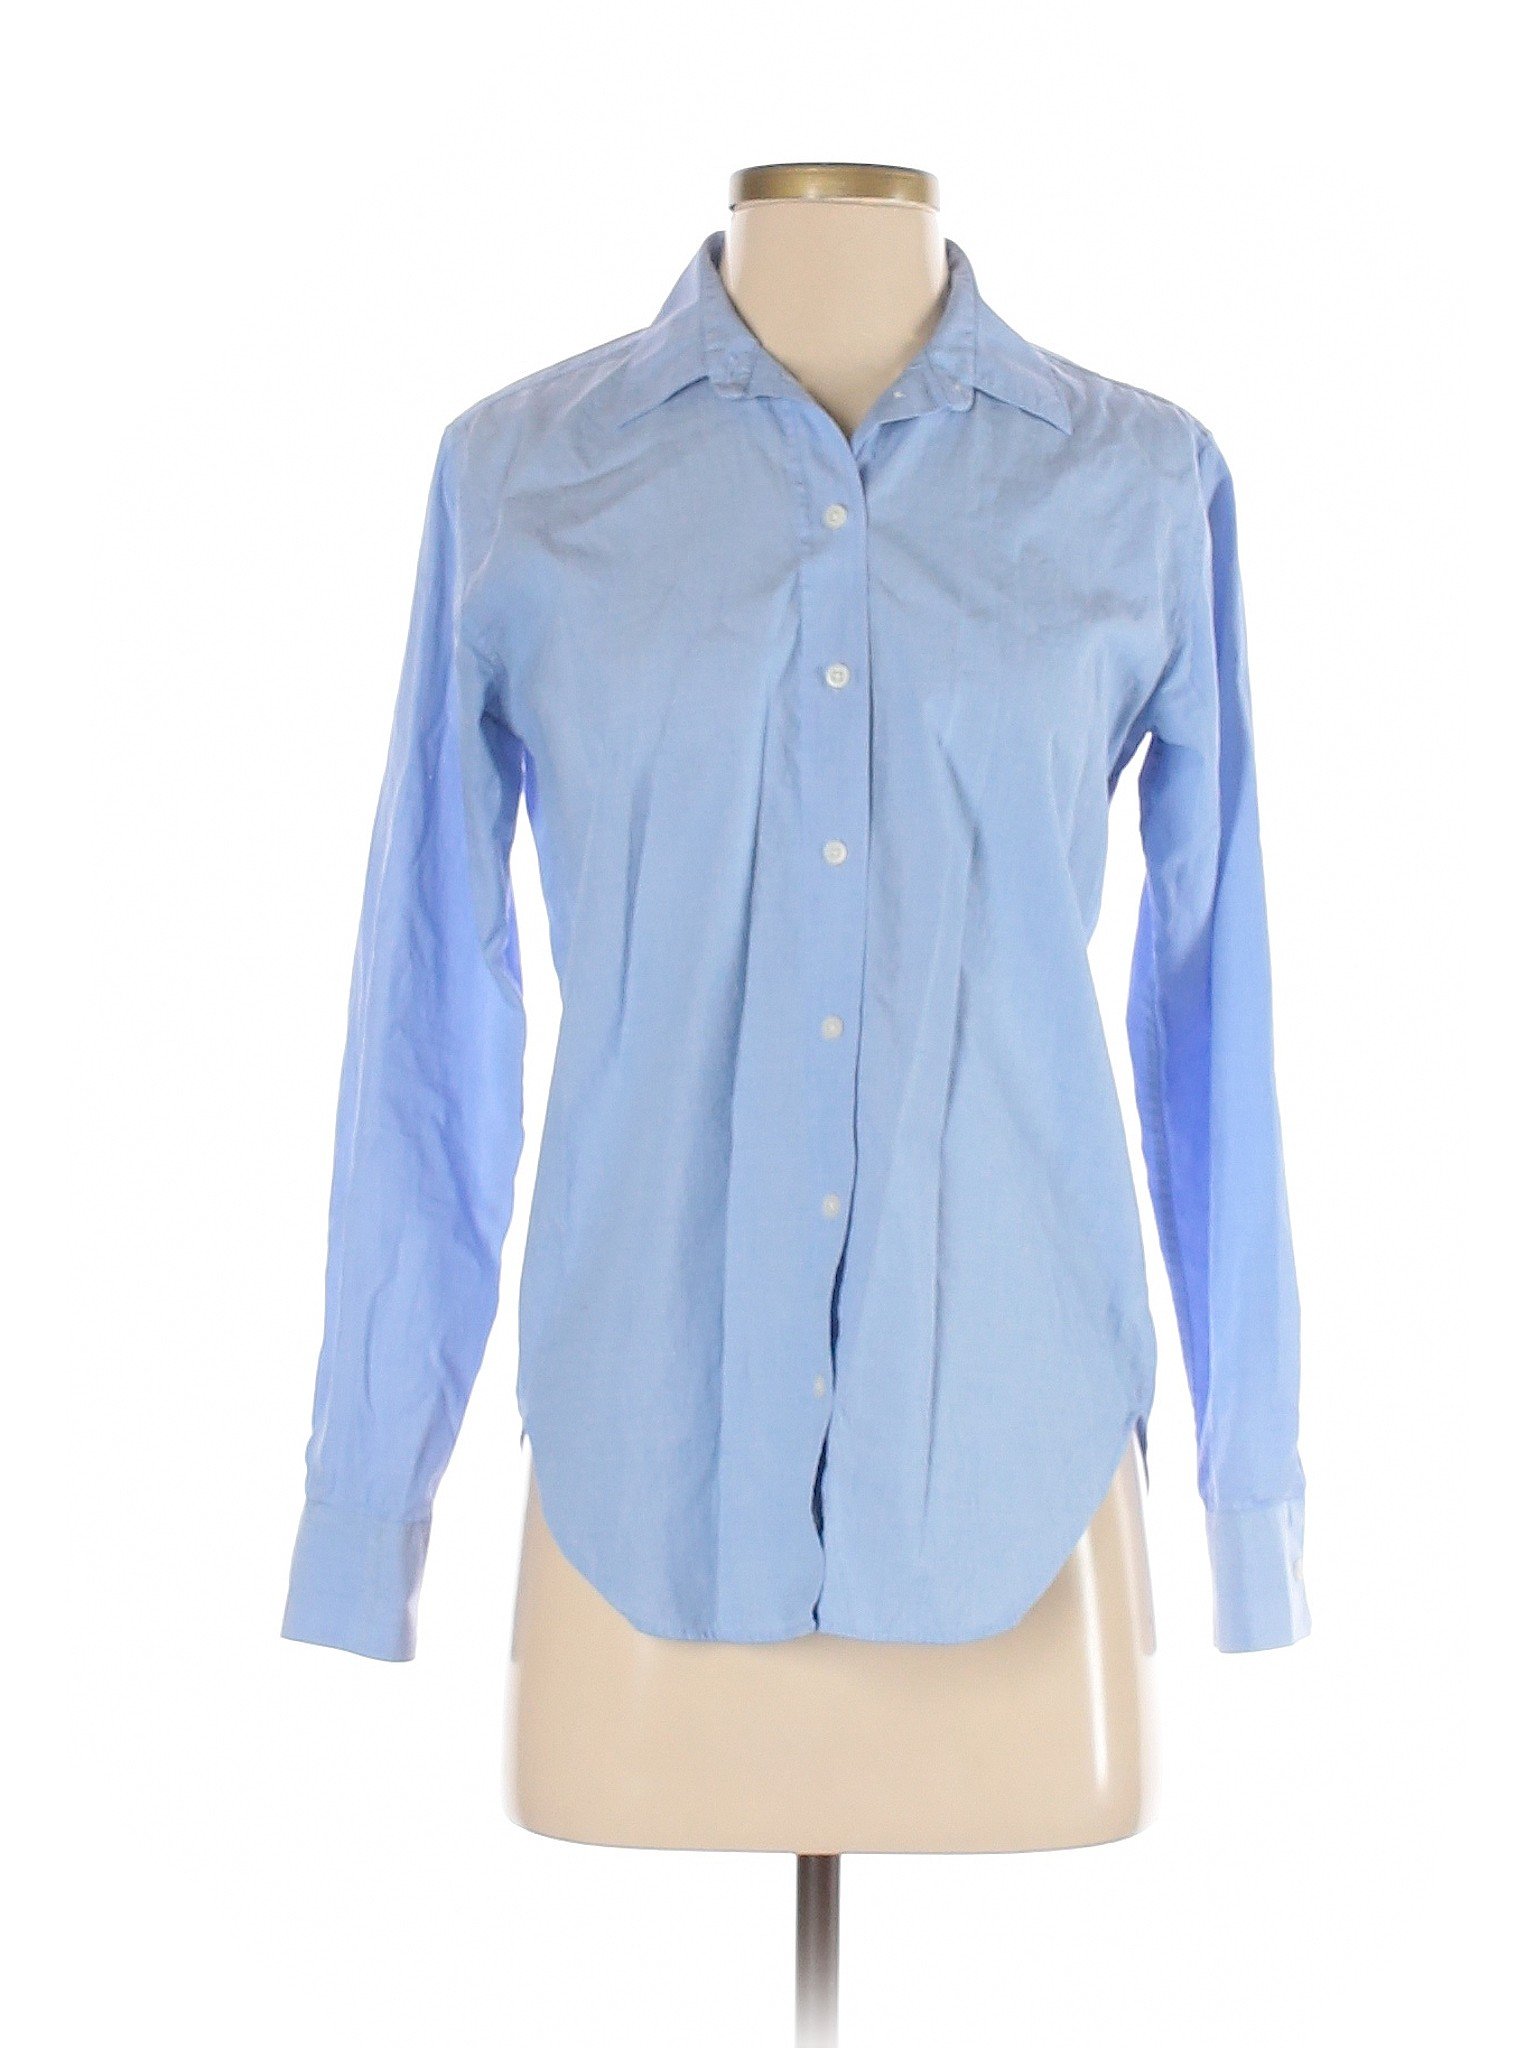 Everlane Women Blue Long Sleeve Button-Down Shirt 00 | eBay